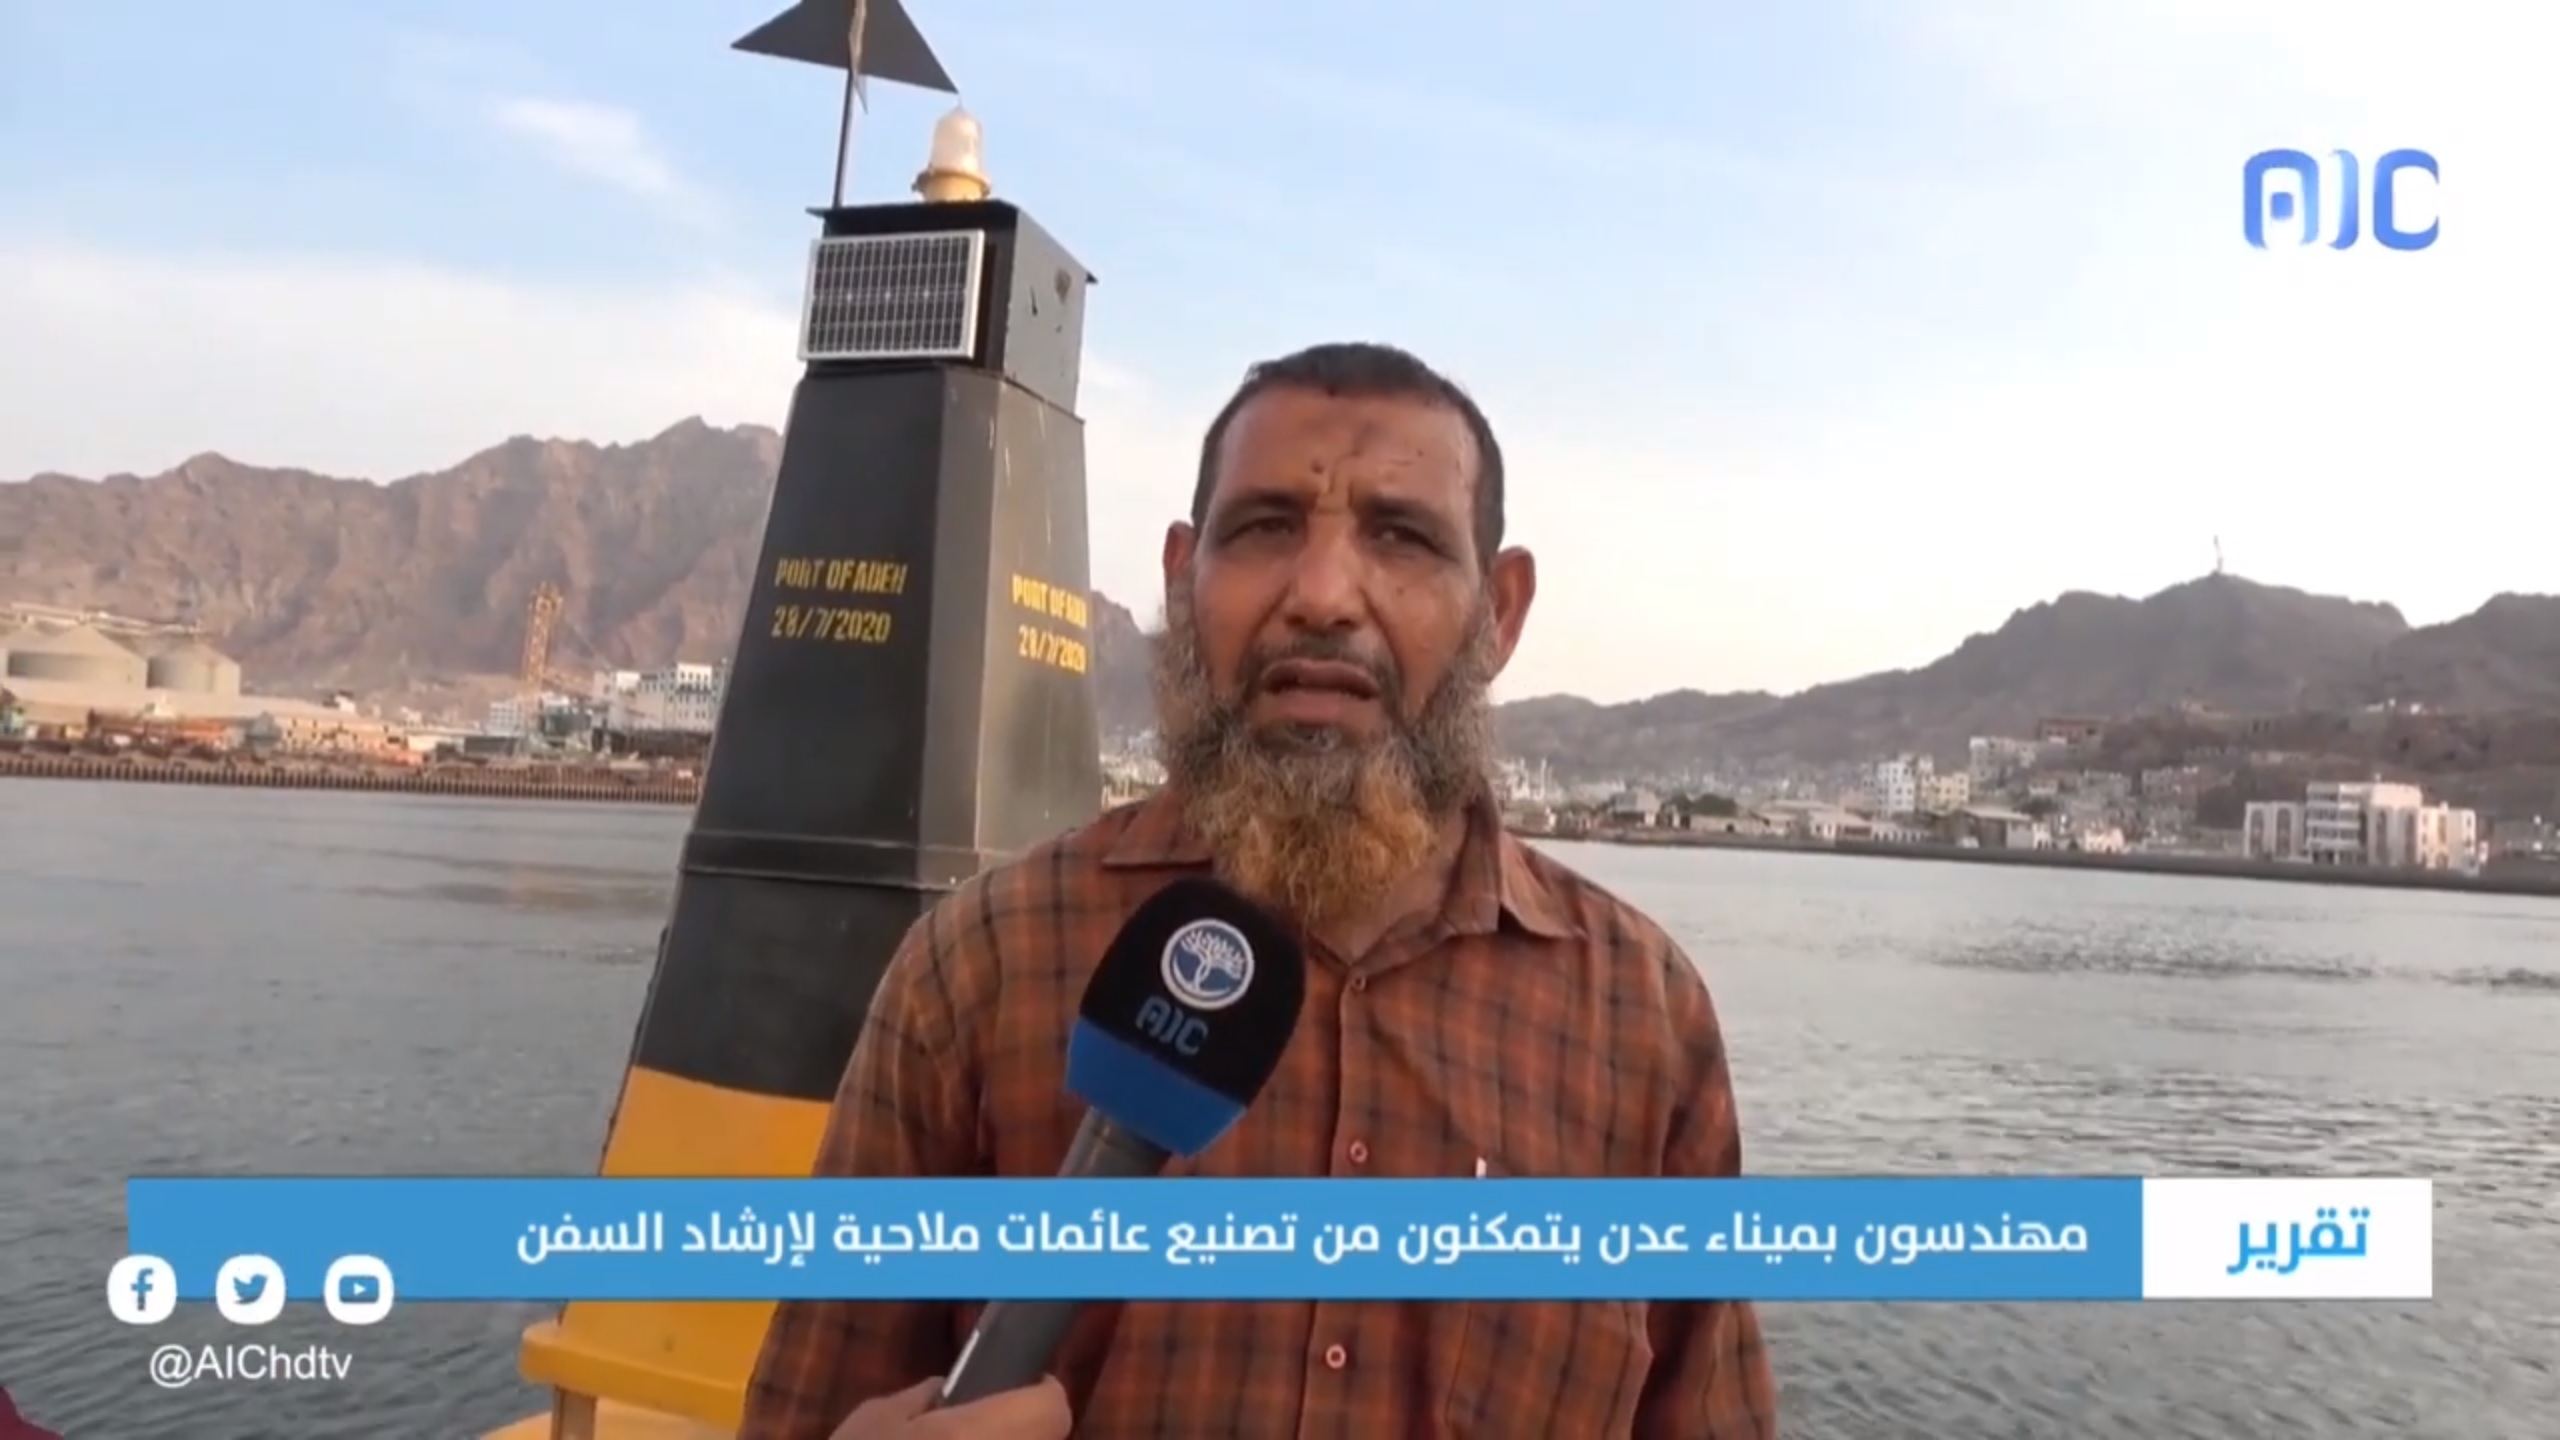 تقرير | مهندسون بميناء عدن يتمكنون من تصنيع عائمات ملاحية لإرشاد السفن